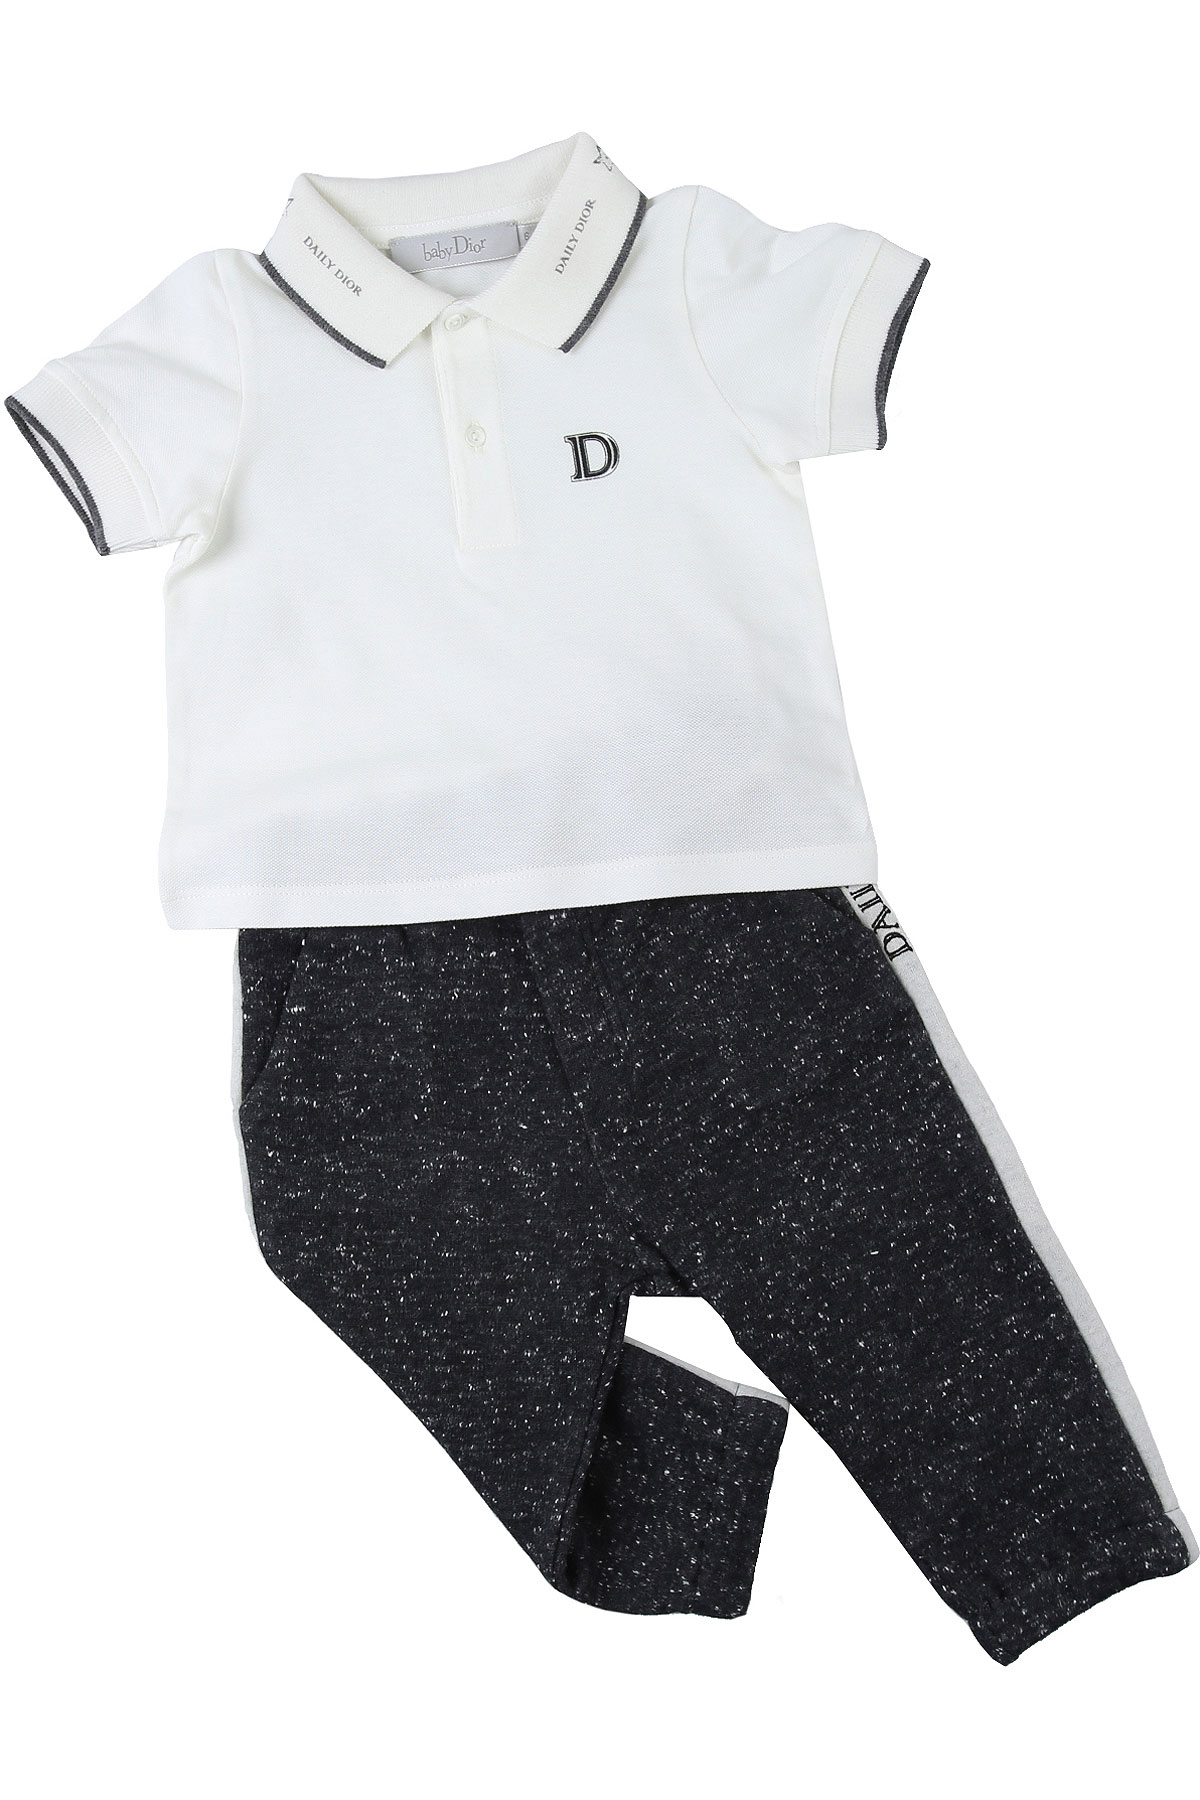 dior baby boy clothes